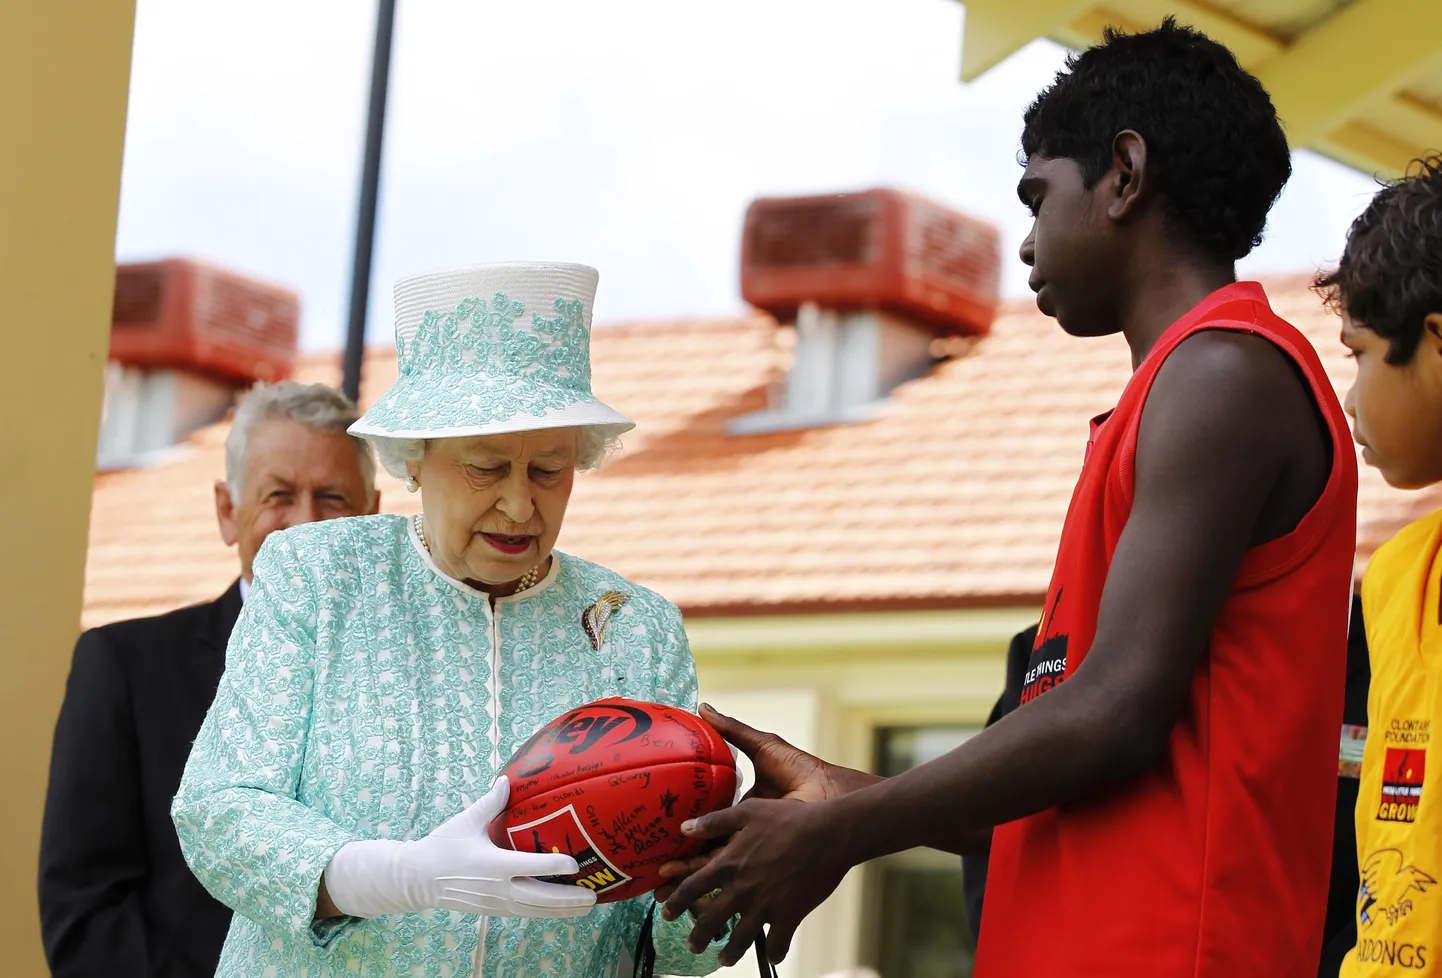 Kuninganna Elisabeth II austraalia jalgpalli mänguvahendiga. Pilt on illustratiivne